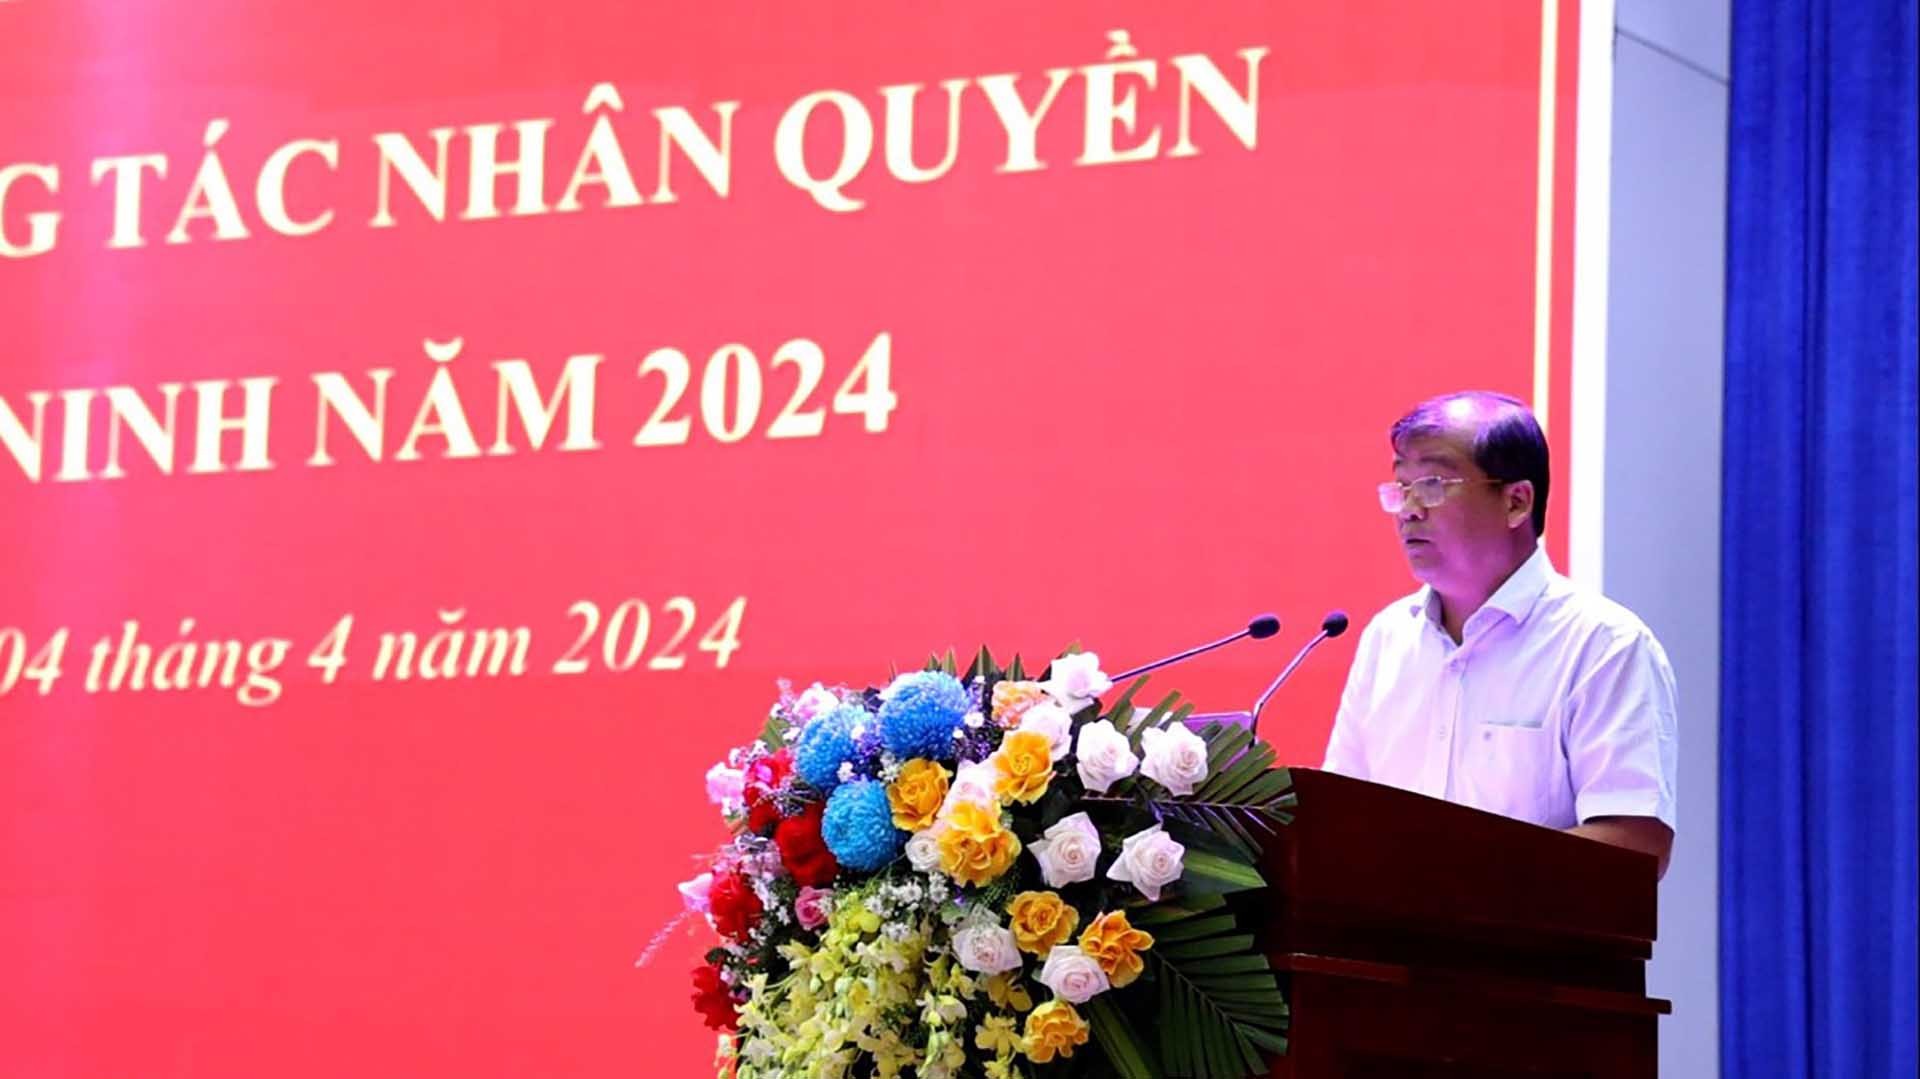 Hội nghị tập huấn công tác nhân quyền tỉnh Tây Ninh năm 2024